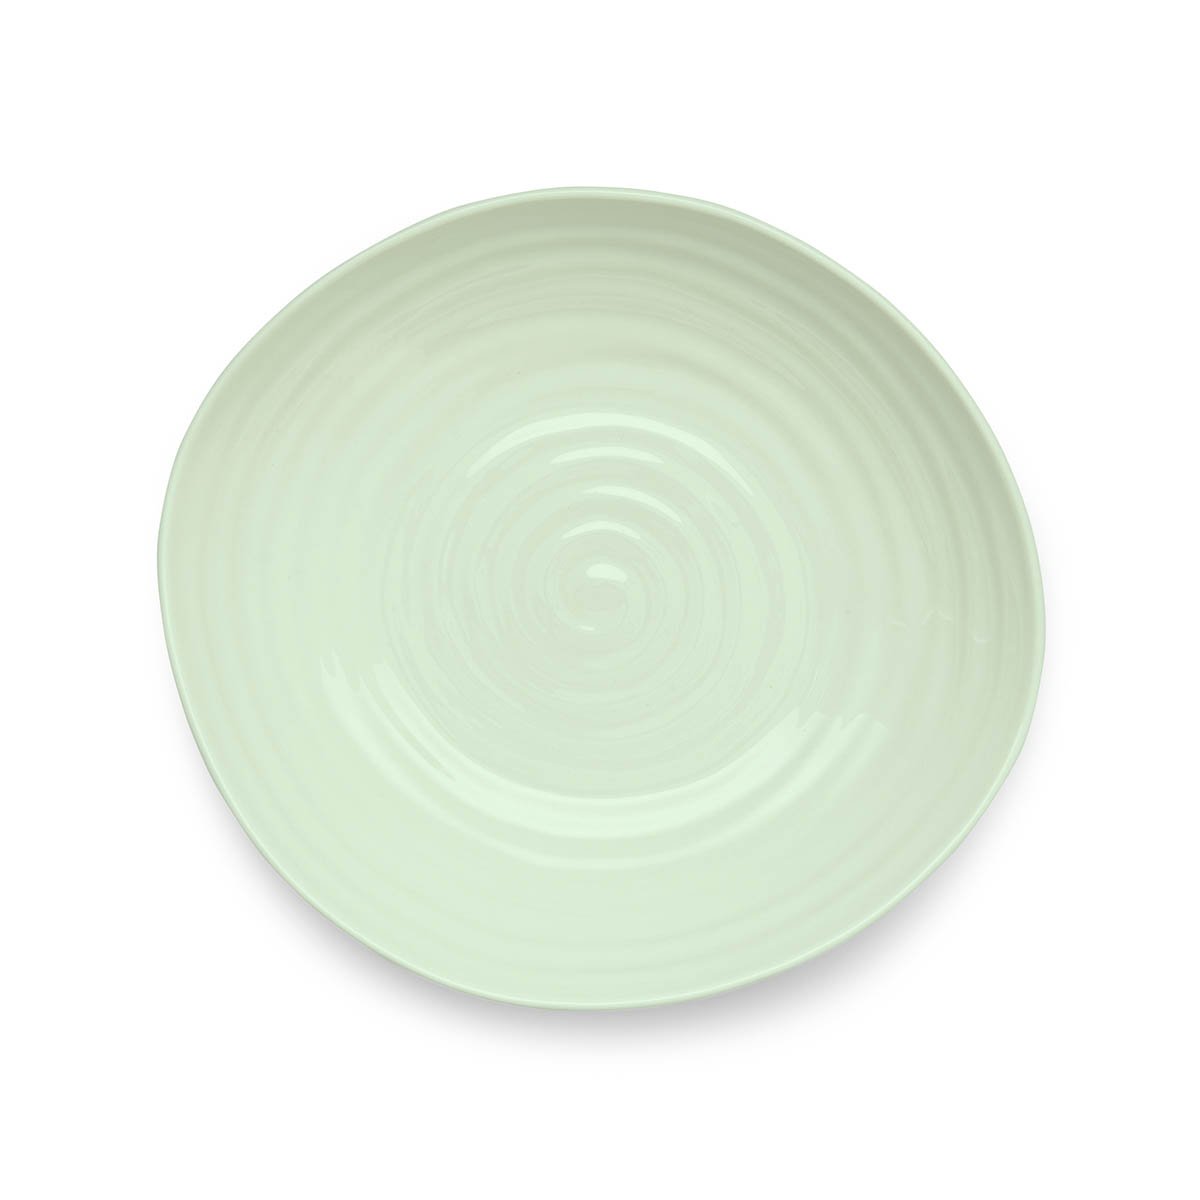 Sophie Conran Celadon Set of 4 Pasta Bowls image number null